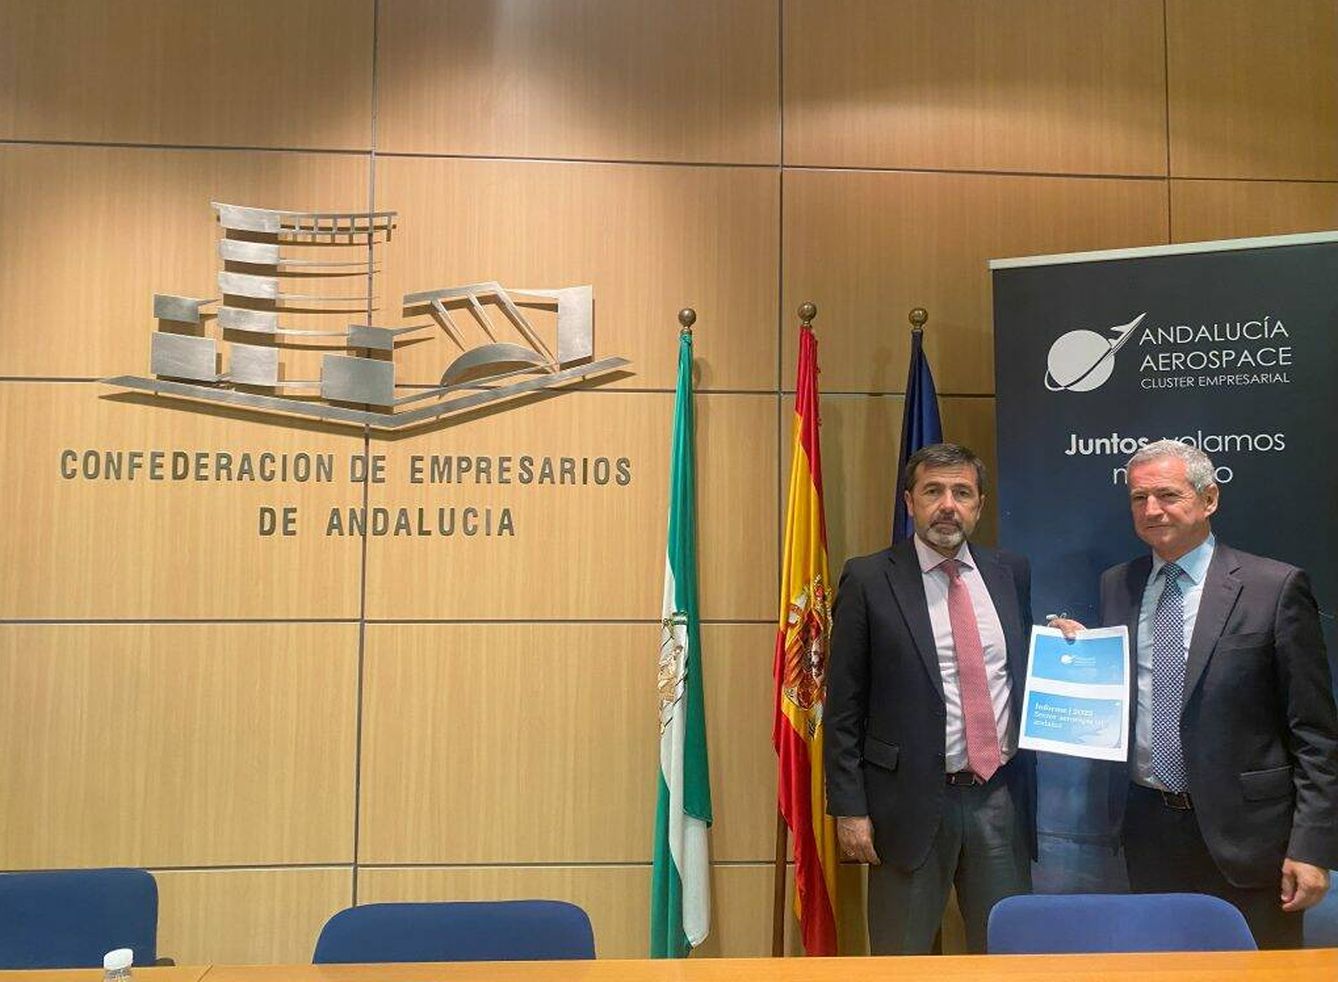 Los representantes de Andalucía Aerospace en la presentación del informe sobre el sector en Andalucía.